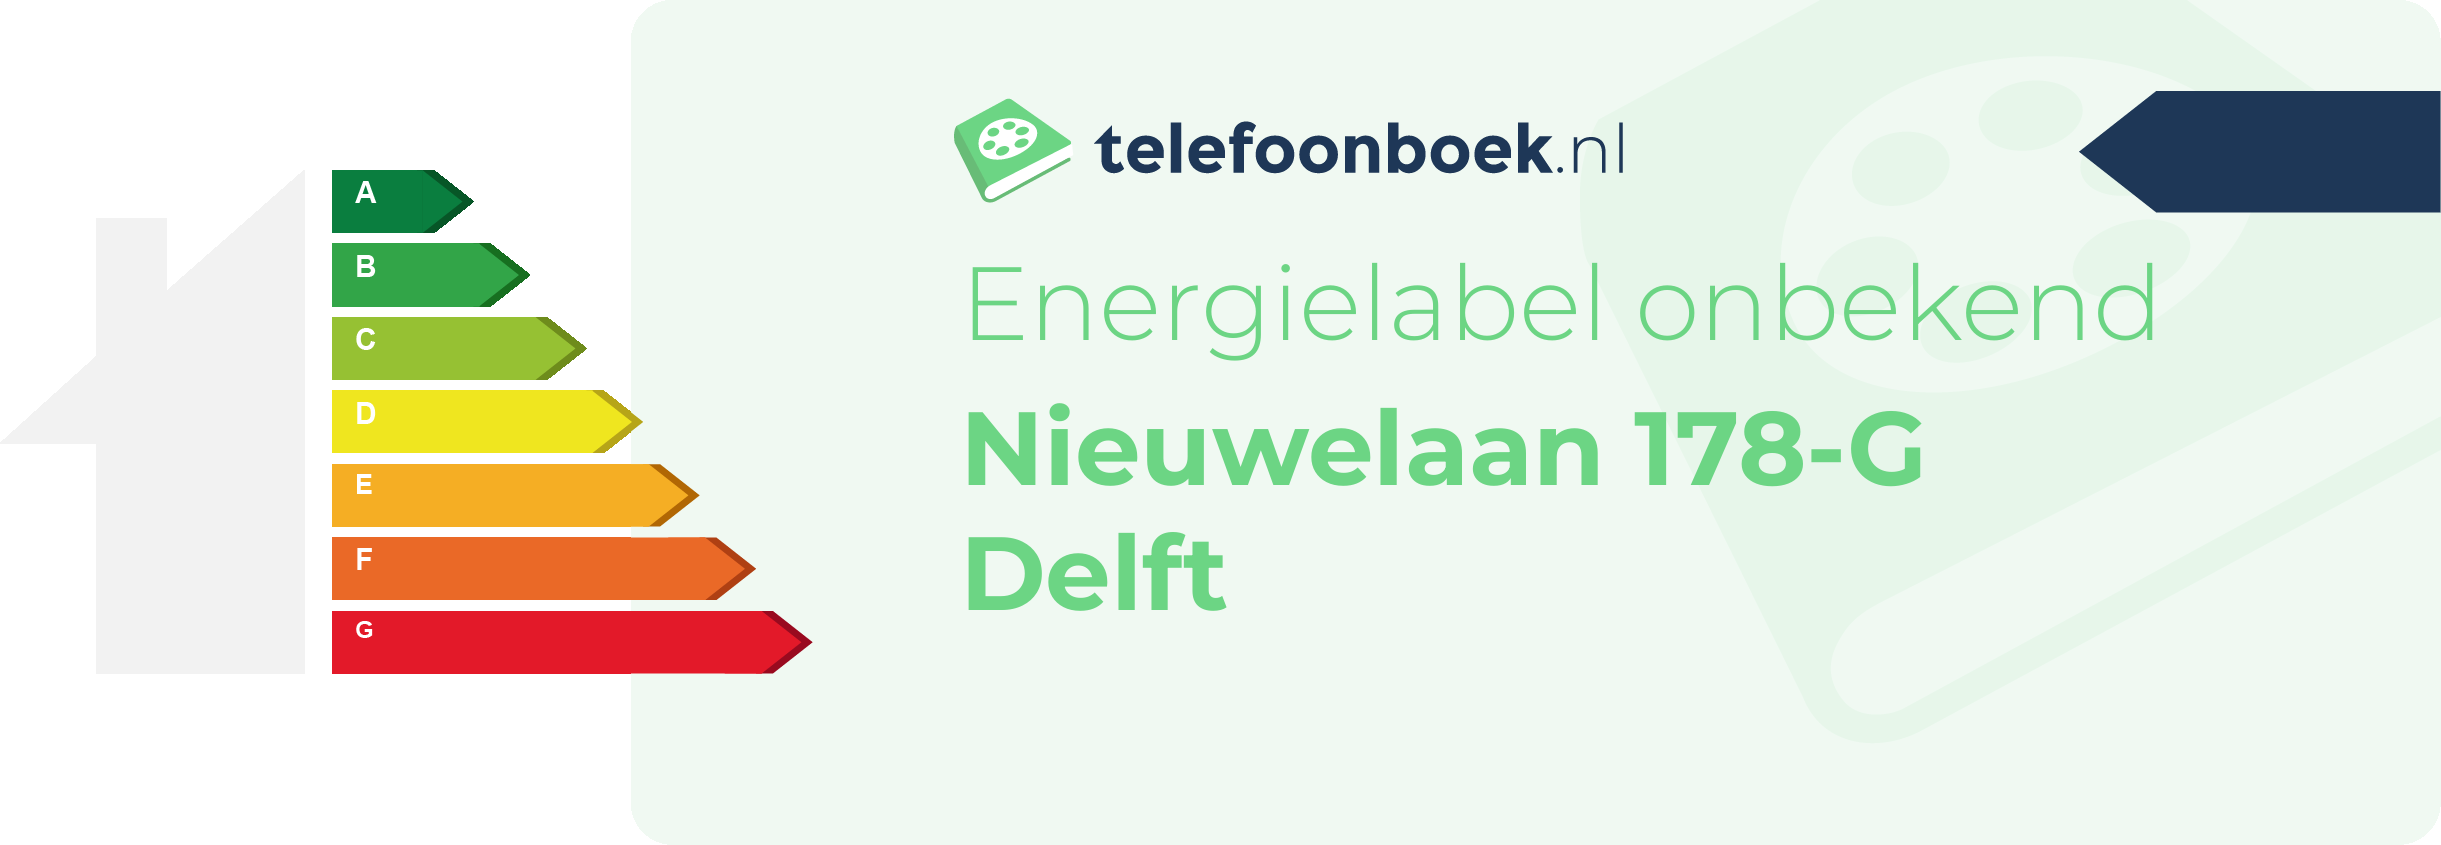 Energielabel Nieuwelaan 178-G Delft